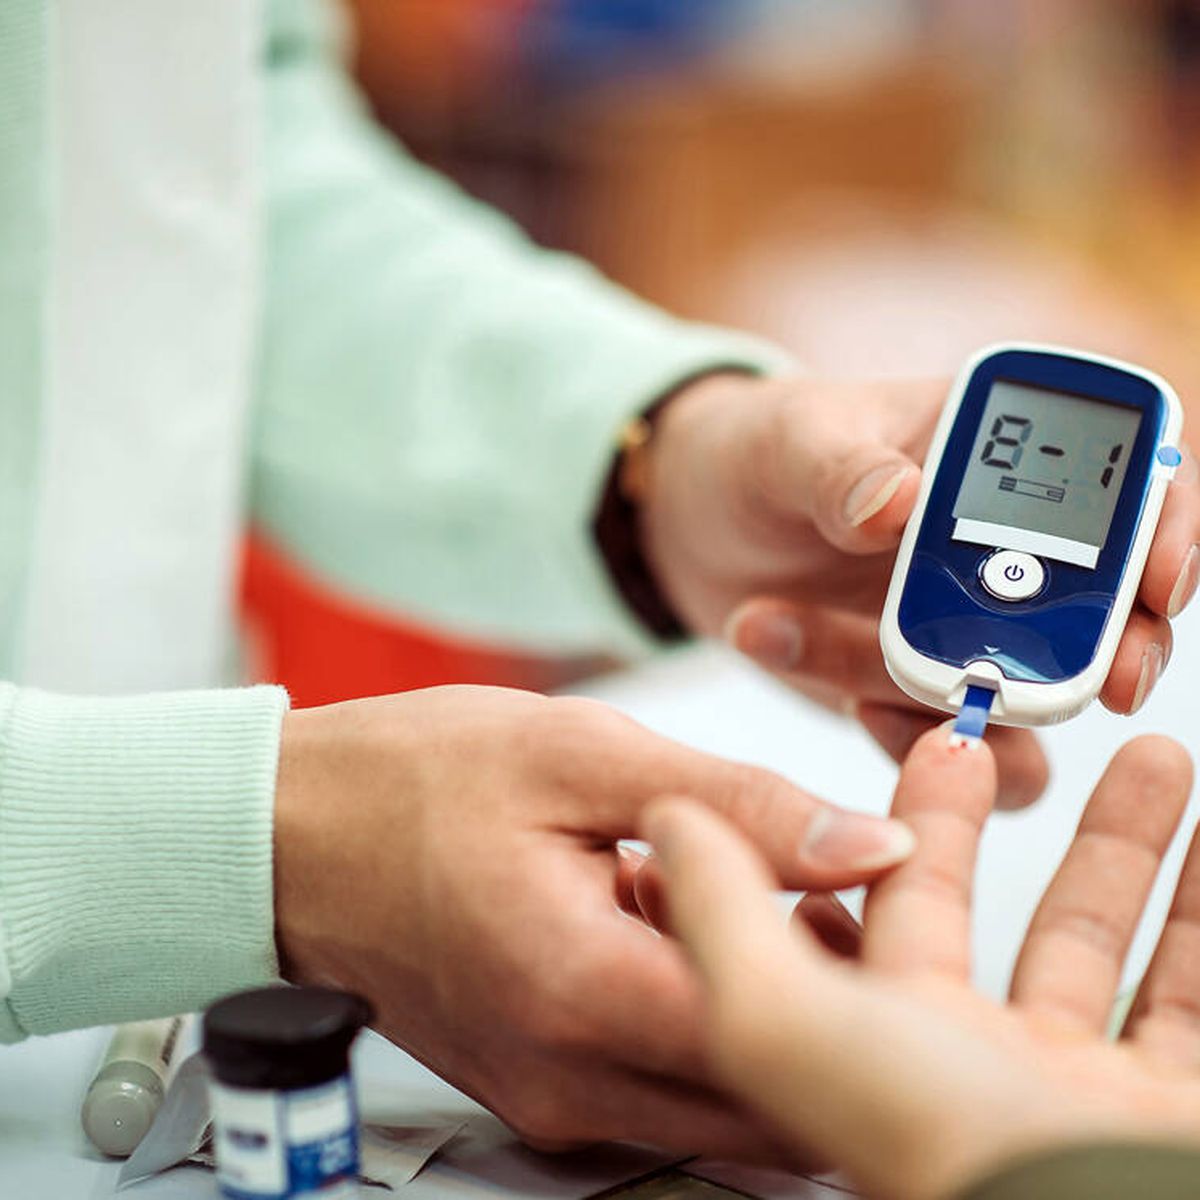 Reloj medidor de glucosa con alta tecnología - DIABETICOS CONTROLADOS